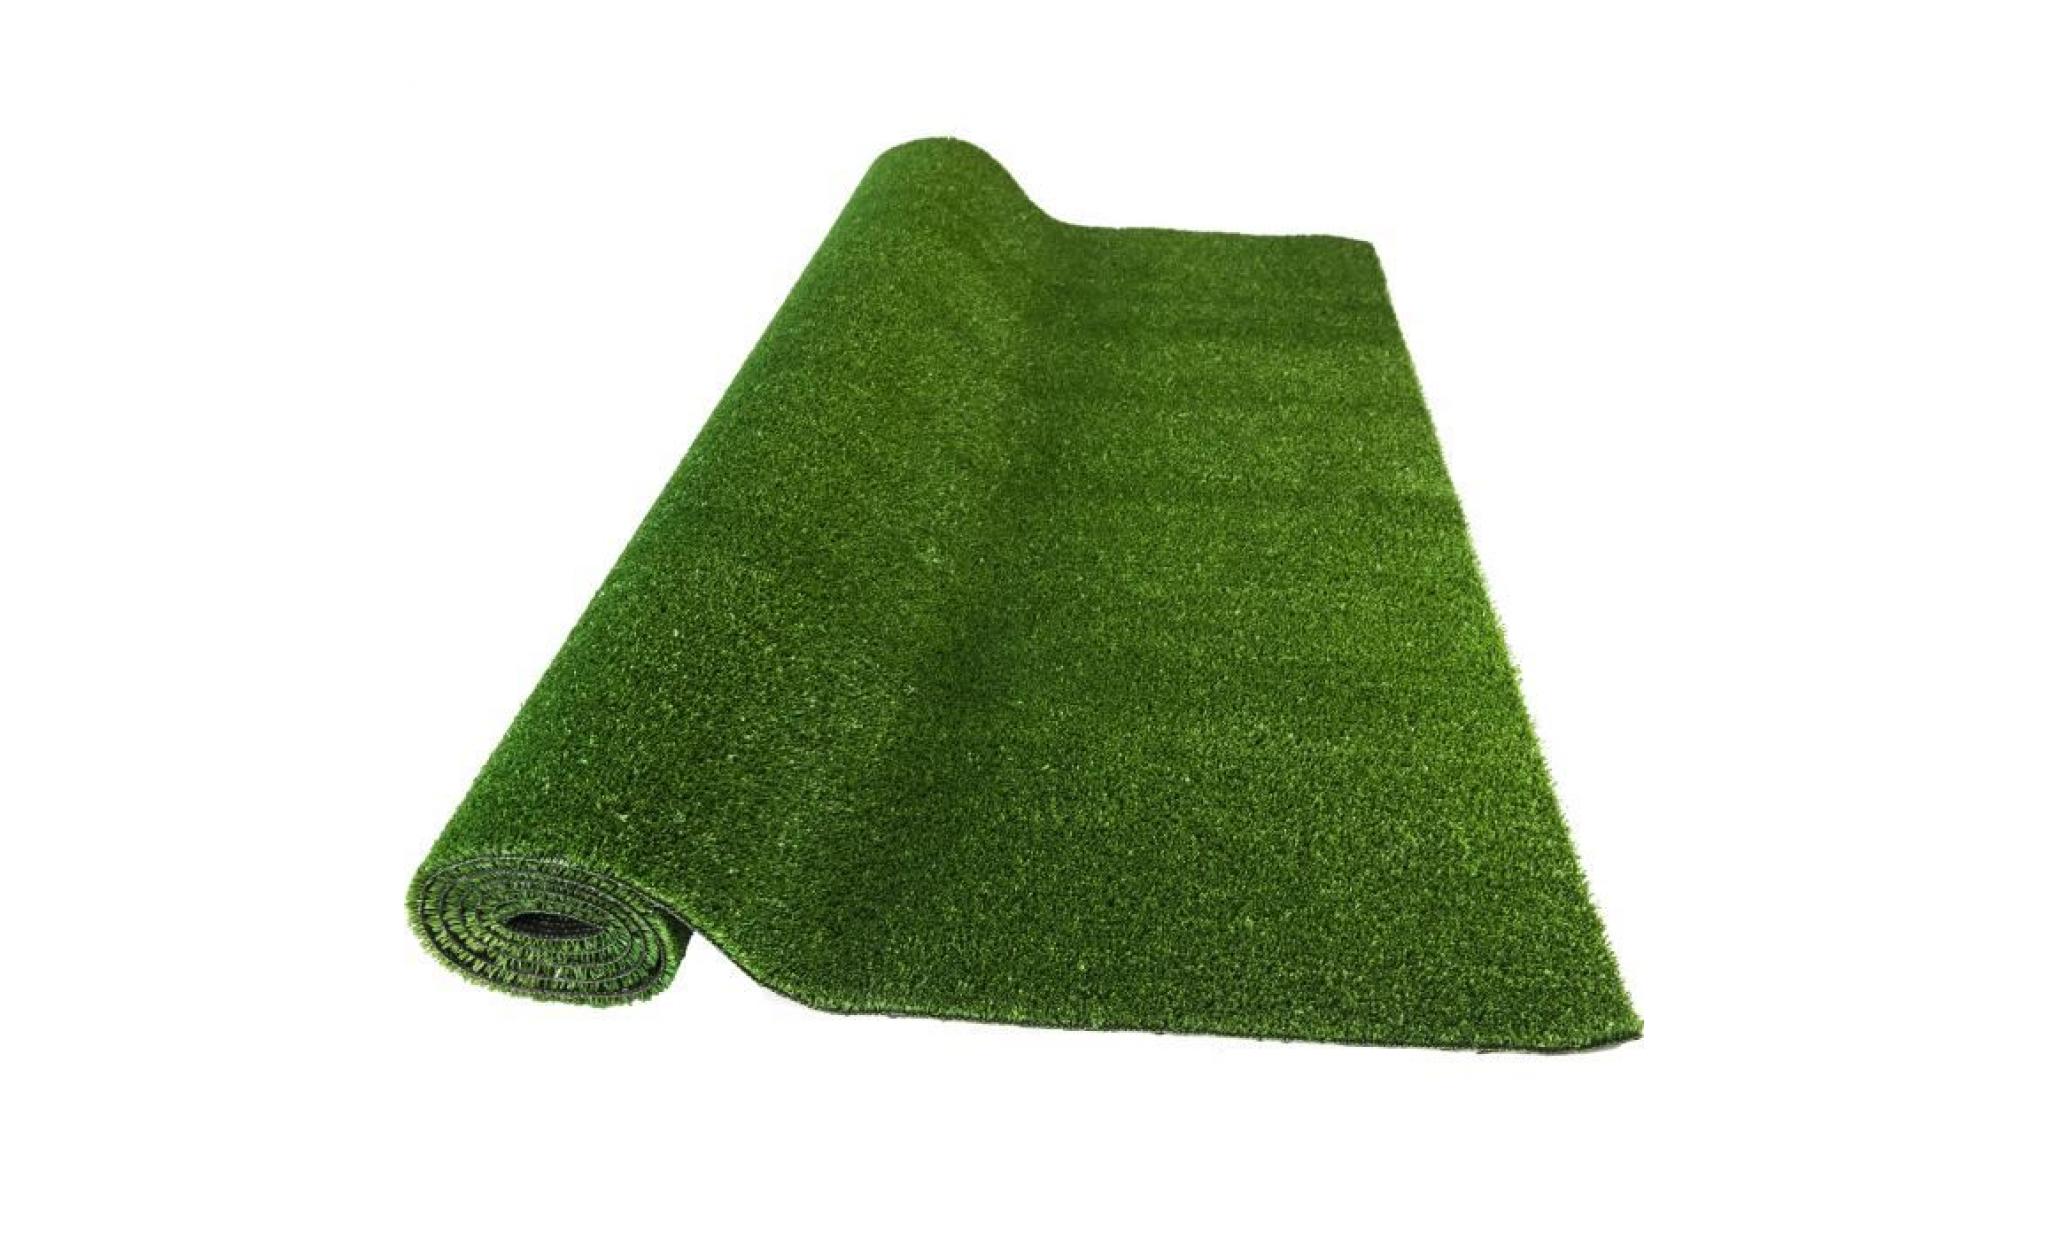 50 x 80 cm tapis de gazon synthetique. coloris vert disponible en plusieurs dimensions.